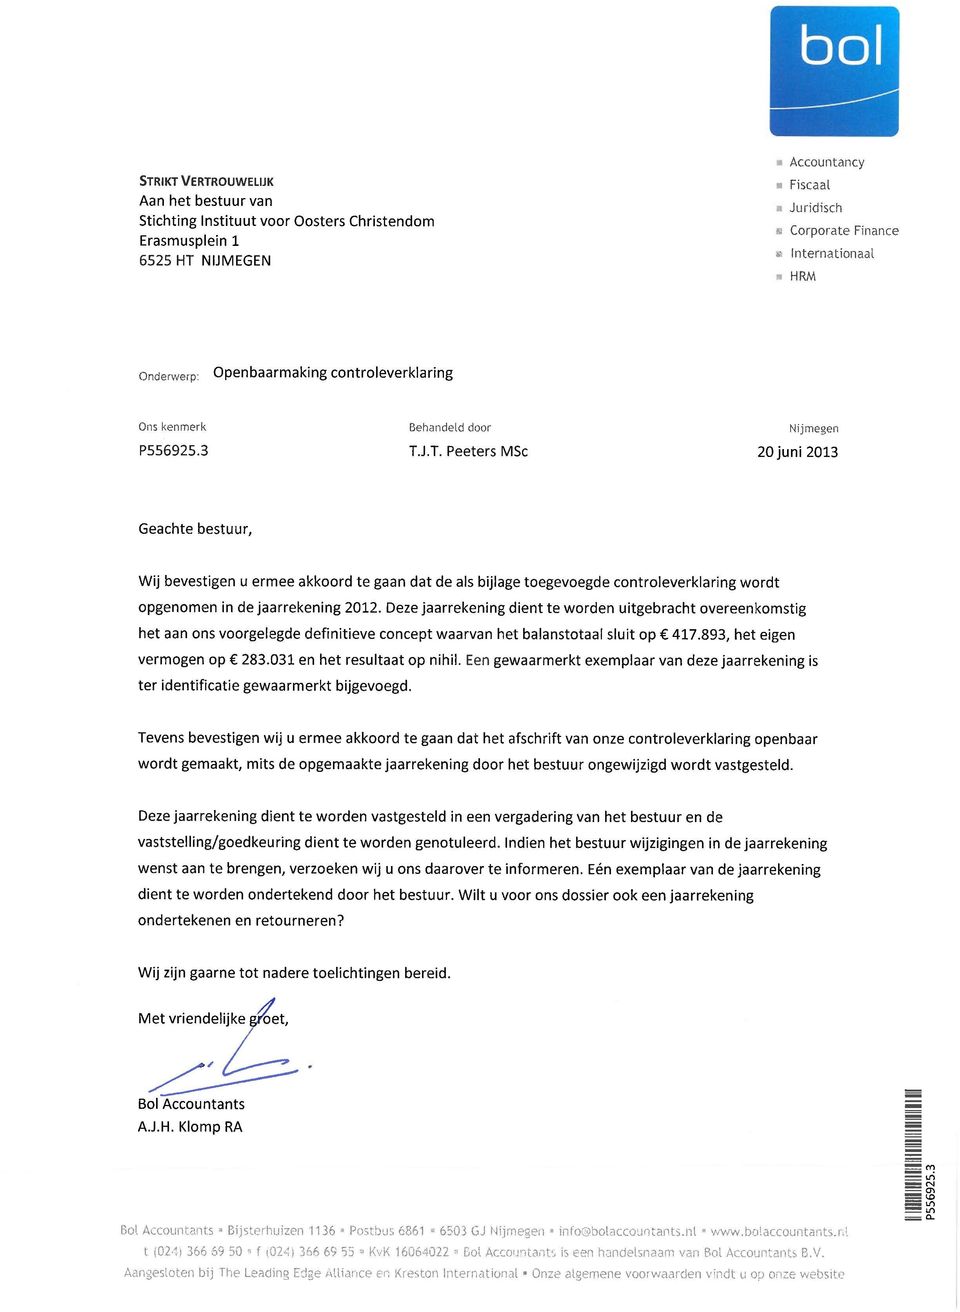 J.T. Peeters MSc Nijmegen 20juni2013 Geachte bestuur, Wij bevestigen u ermee akkoord te gaan dat de als bijlage toegevoegde controleverklaring wordt opgenomen in de jaarrekening 2012.